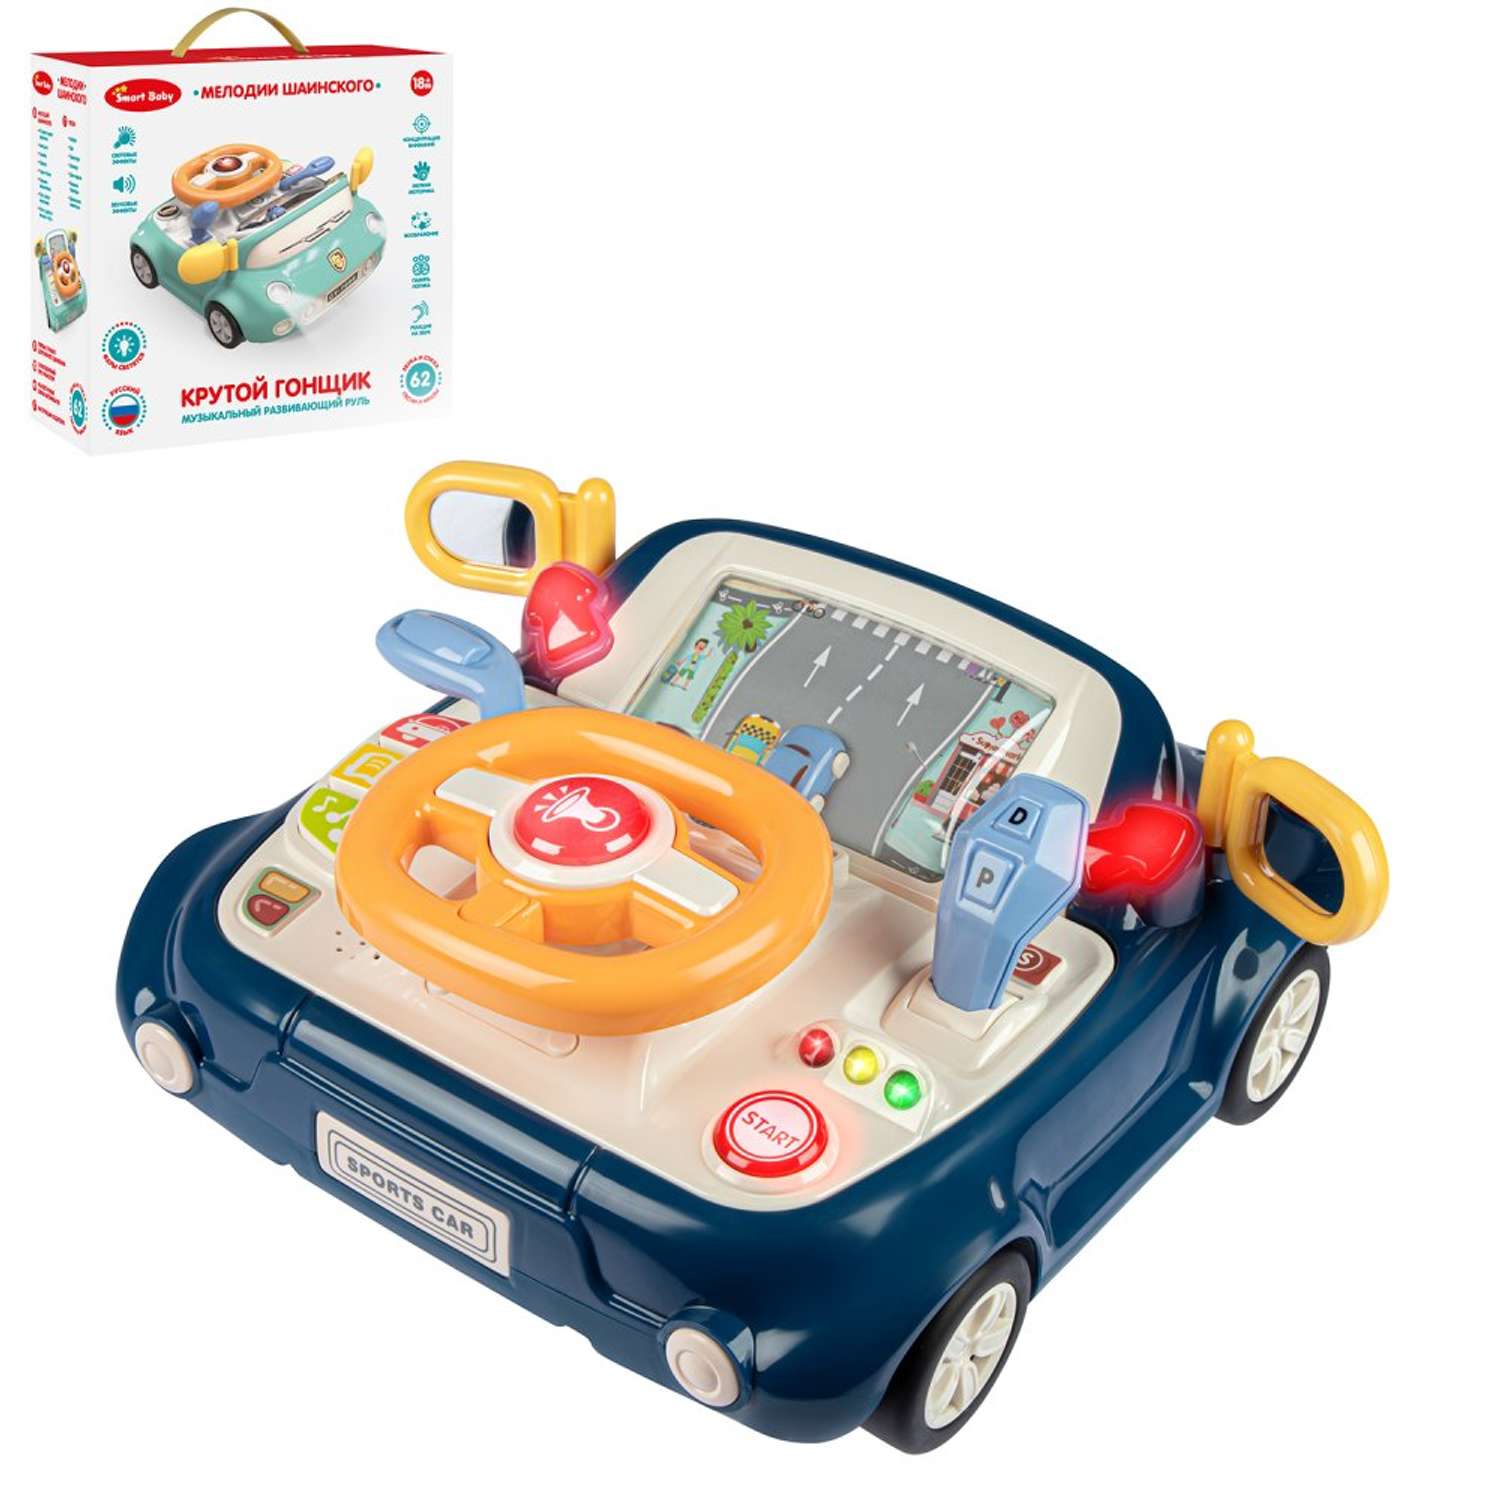 Развивающая игрушка Smart Baby игровой обучающий центр музыкальный JB0334086 - фото 9